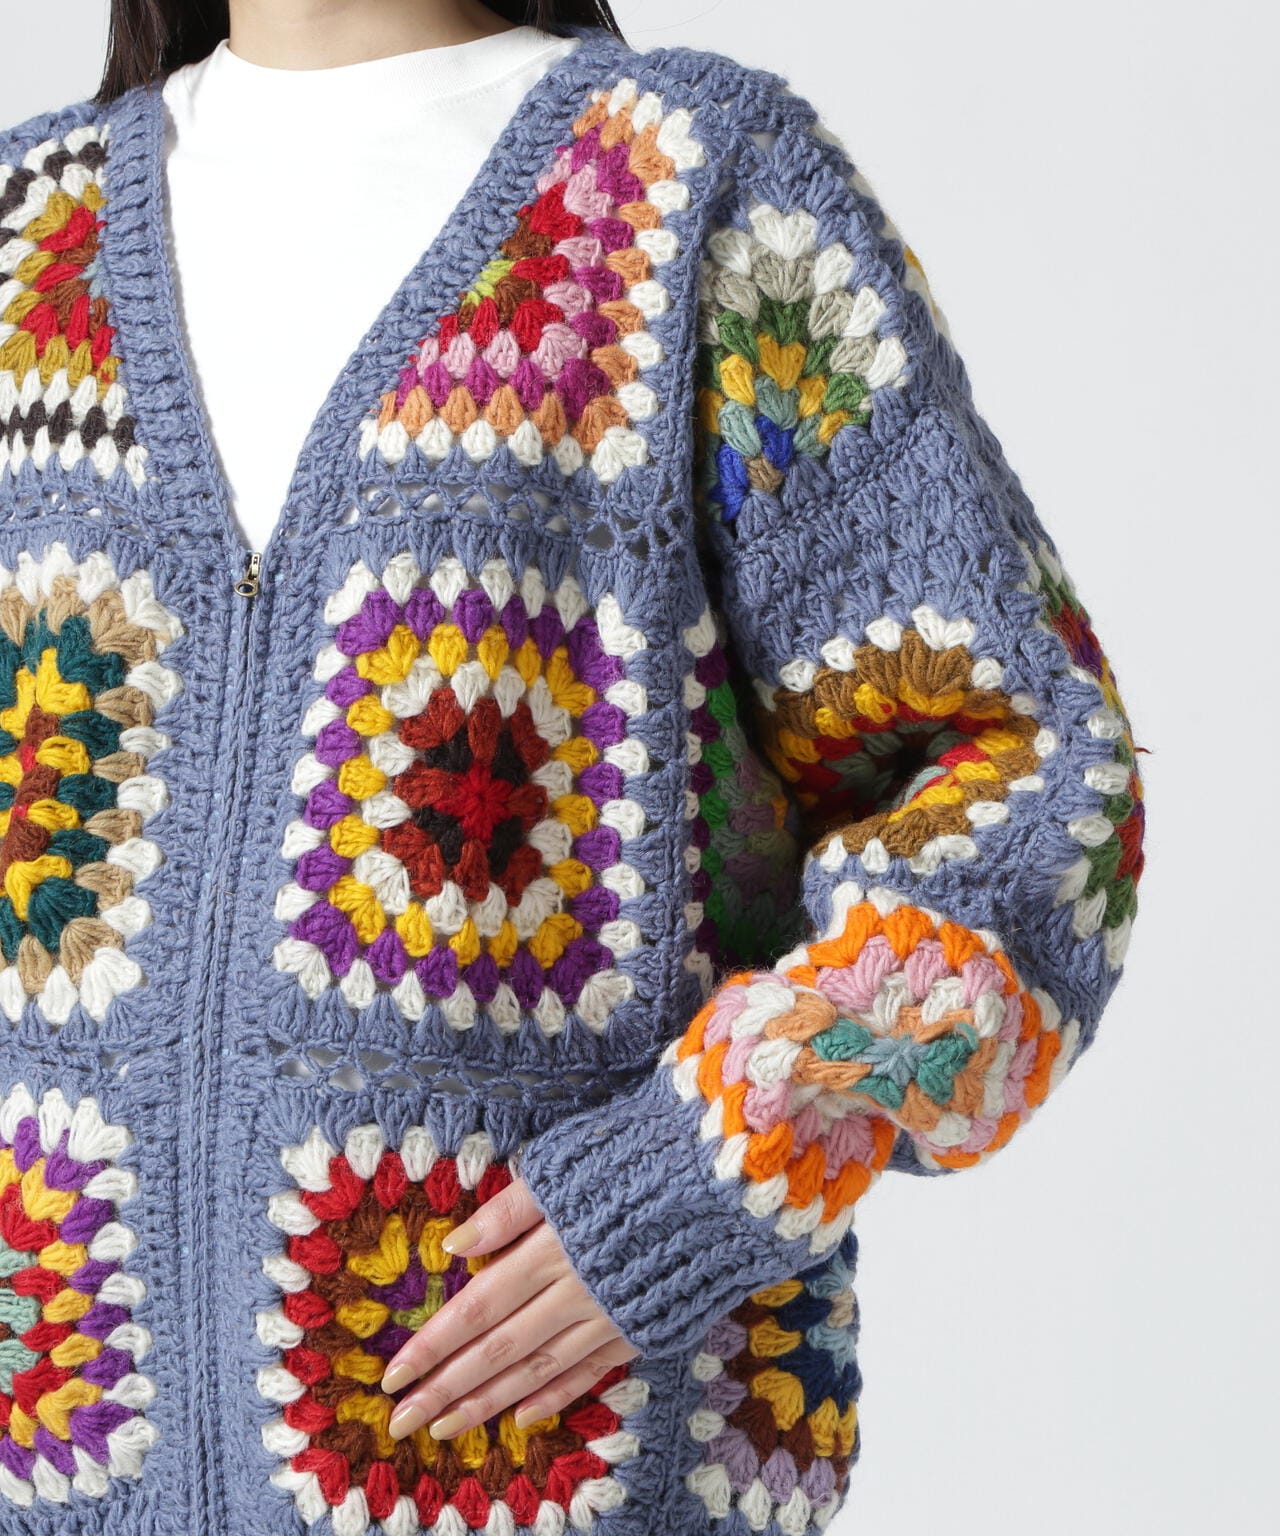 MacMahon Knitting Mills Crochet Cardigan